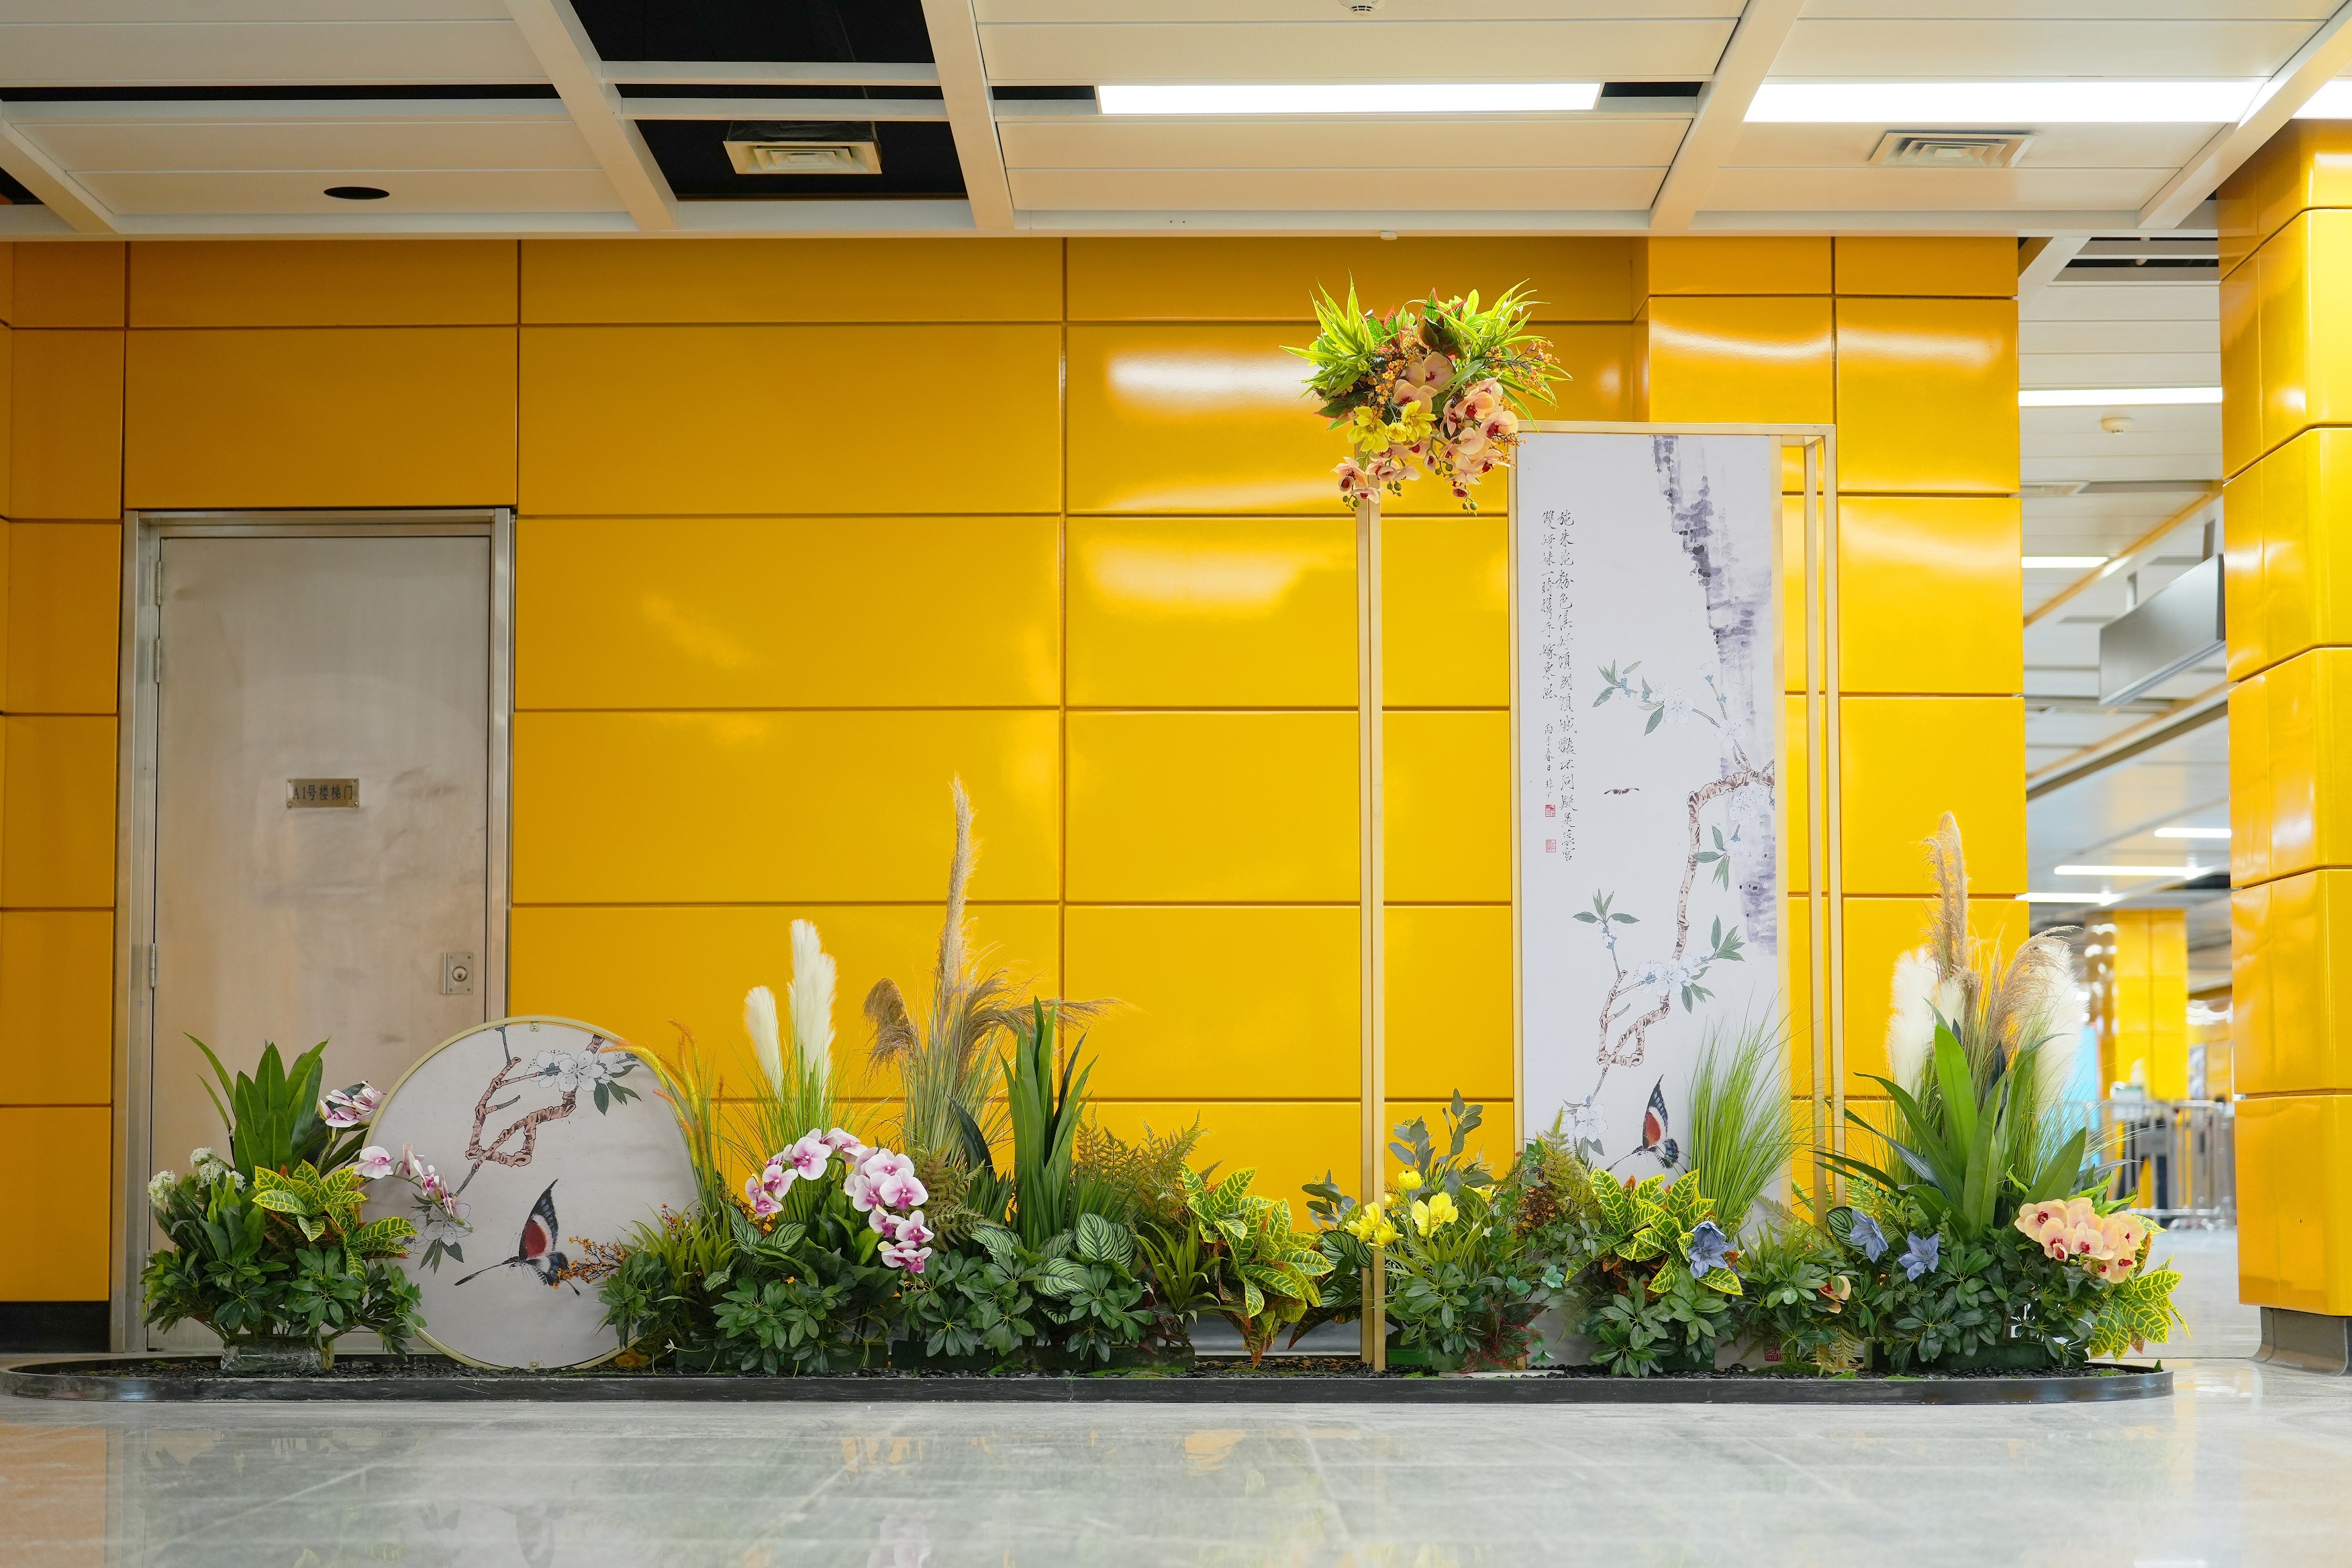 广州南站站厅和换乘通道设置花艺绿植装饰。